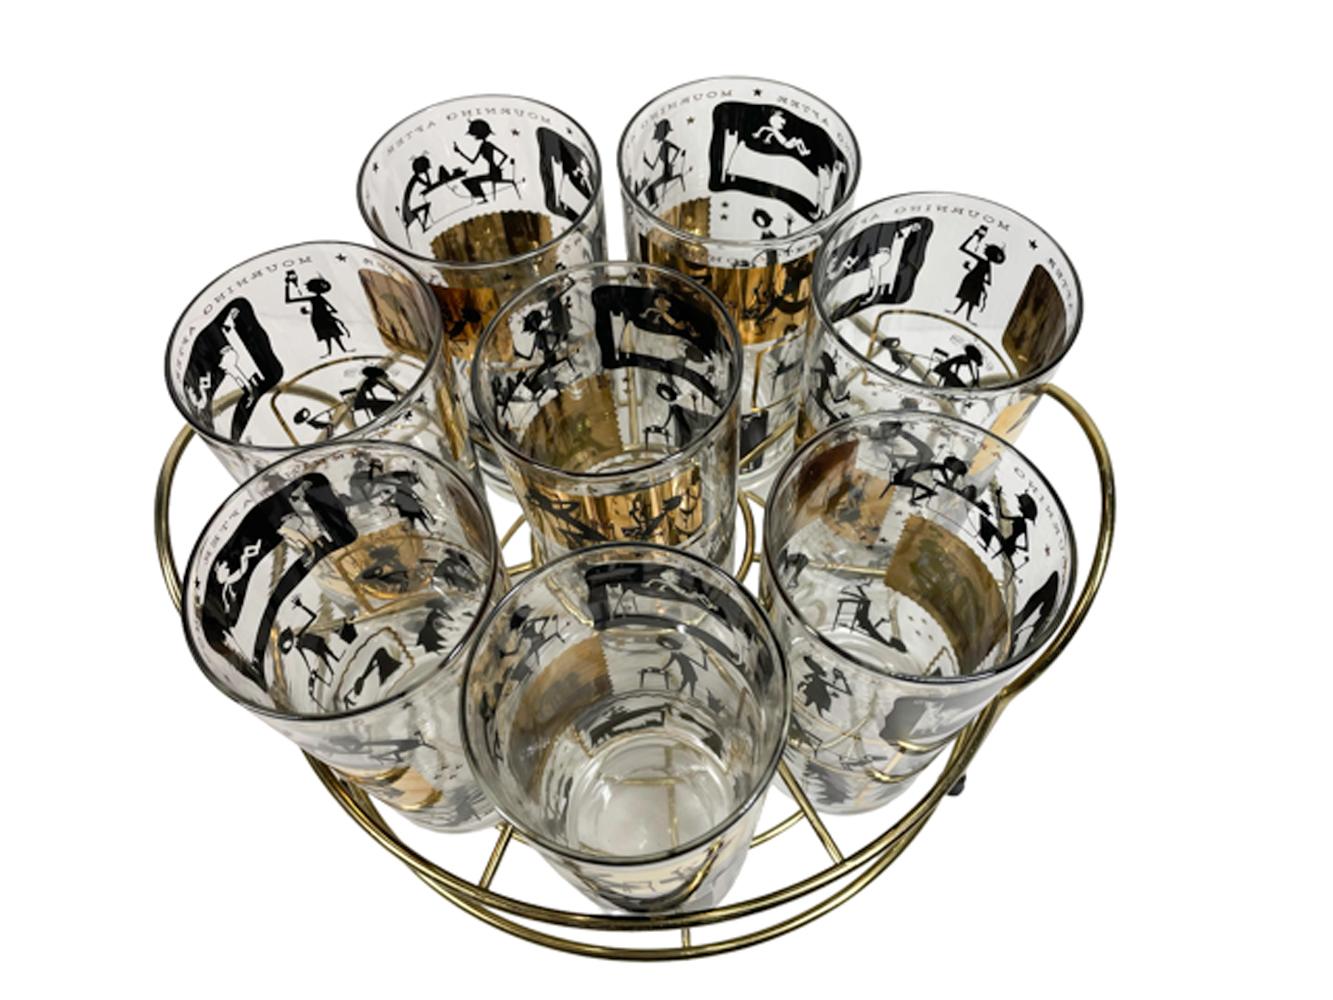 Ensemble de huit verres à cocktail CERA Glass dans un coffret circulaire en métal doré. Chacun des verres est décoré en or 22 carats et en émail noir de trois rangées de quatre scènes représentant des personnes dans diverses activités matinales,